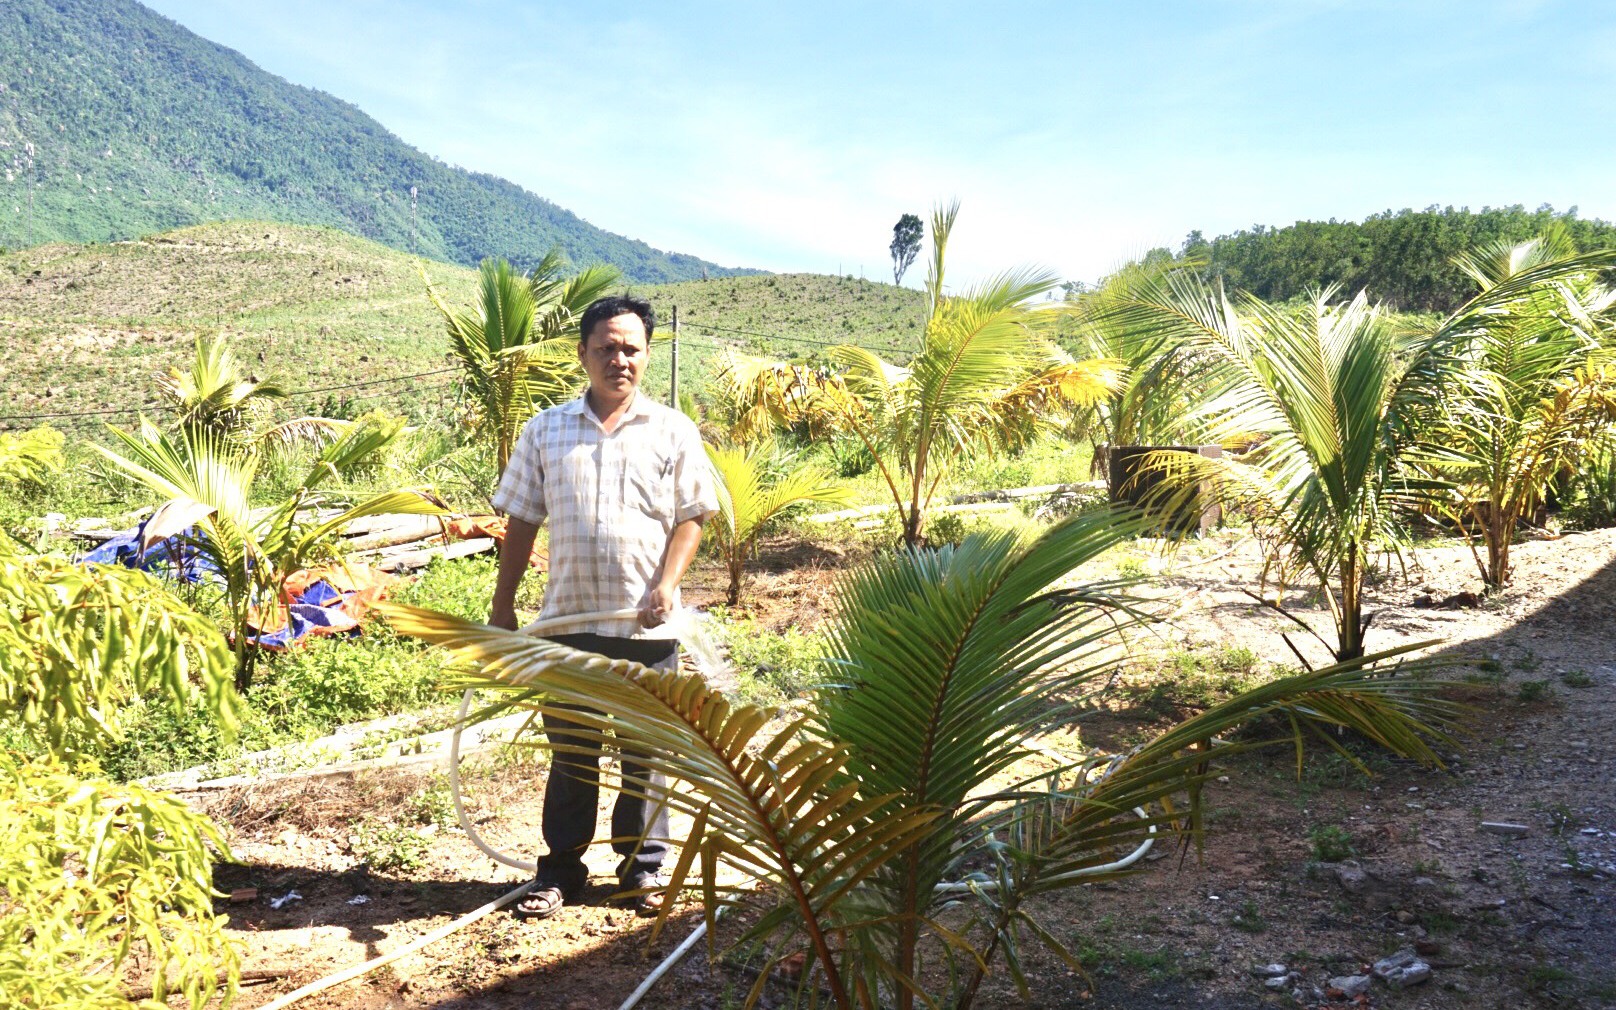 Nông thôn mới ở làng dân tộc Cơ Tu của Đà Nẵng “lên đời” nhờ mô hình trồng trọt, chăn nuôi mới